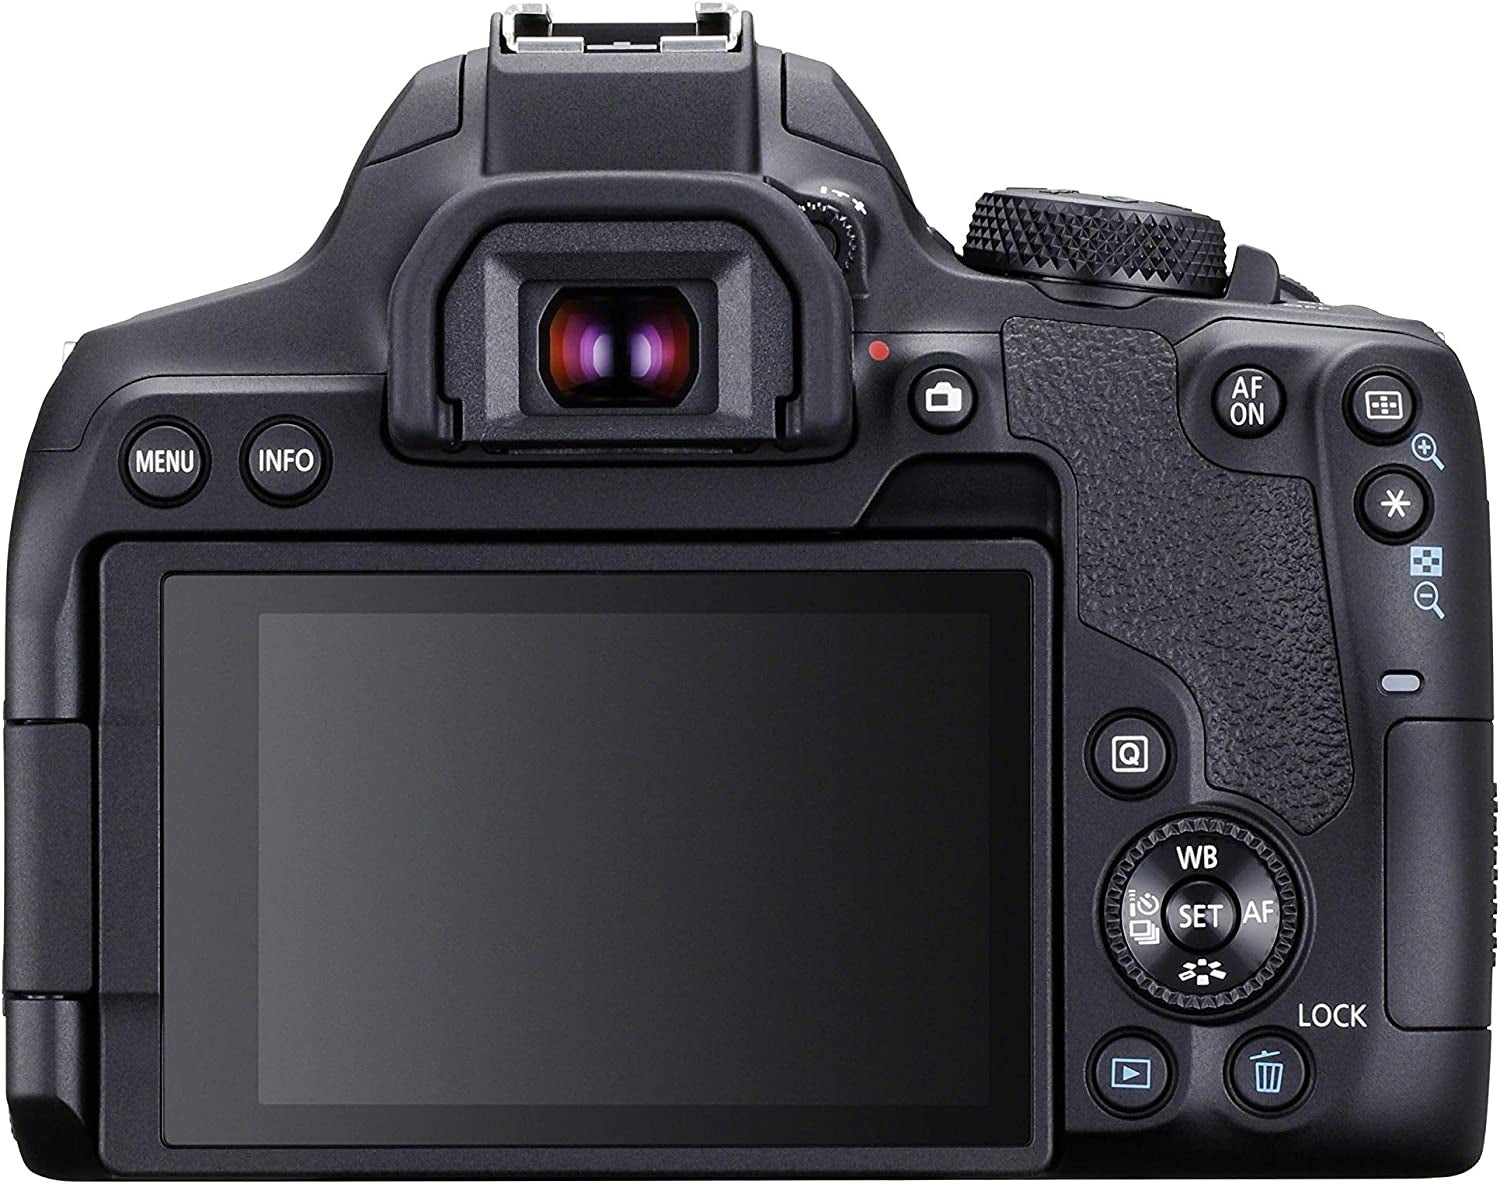 Canon EOS 850D (Rebel T8I) DSLR Camera Bundle - Everyday-Sales.com